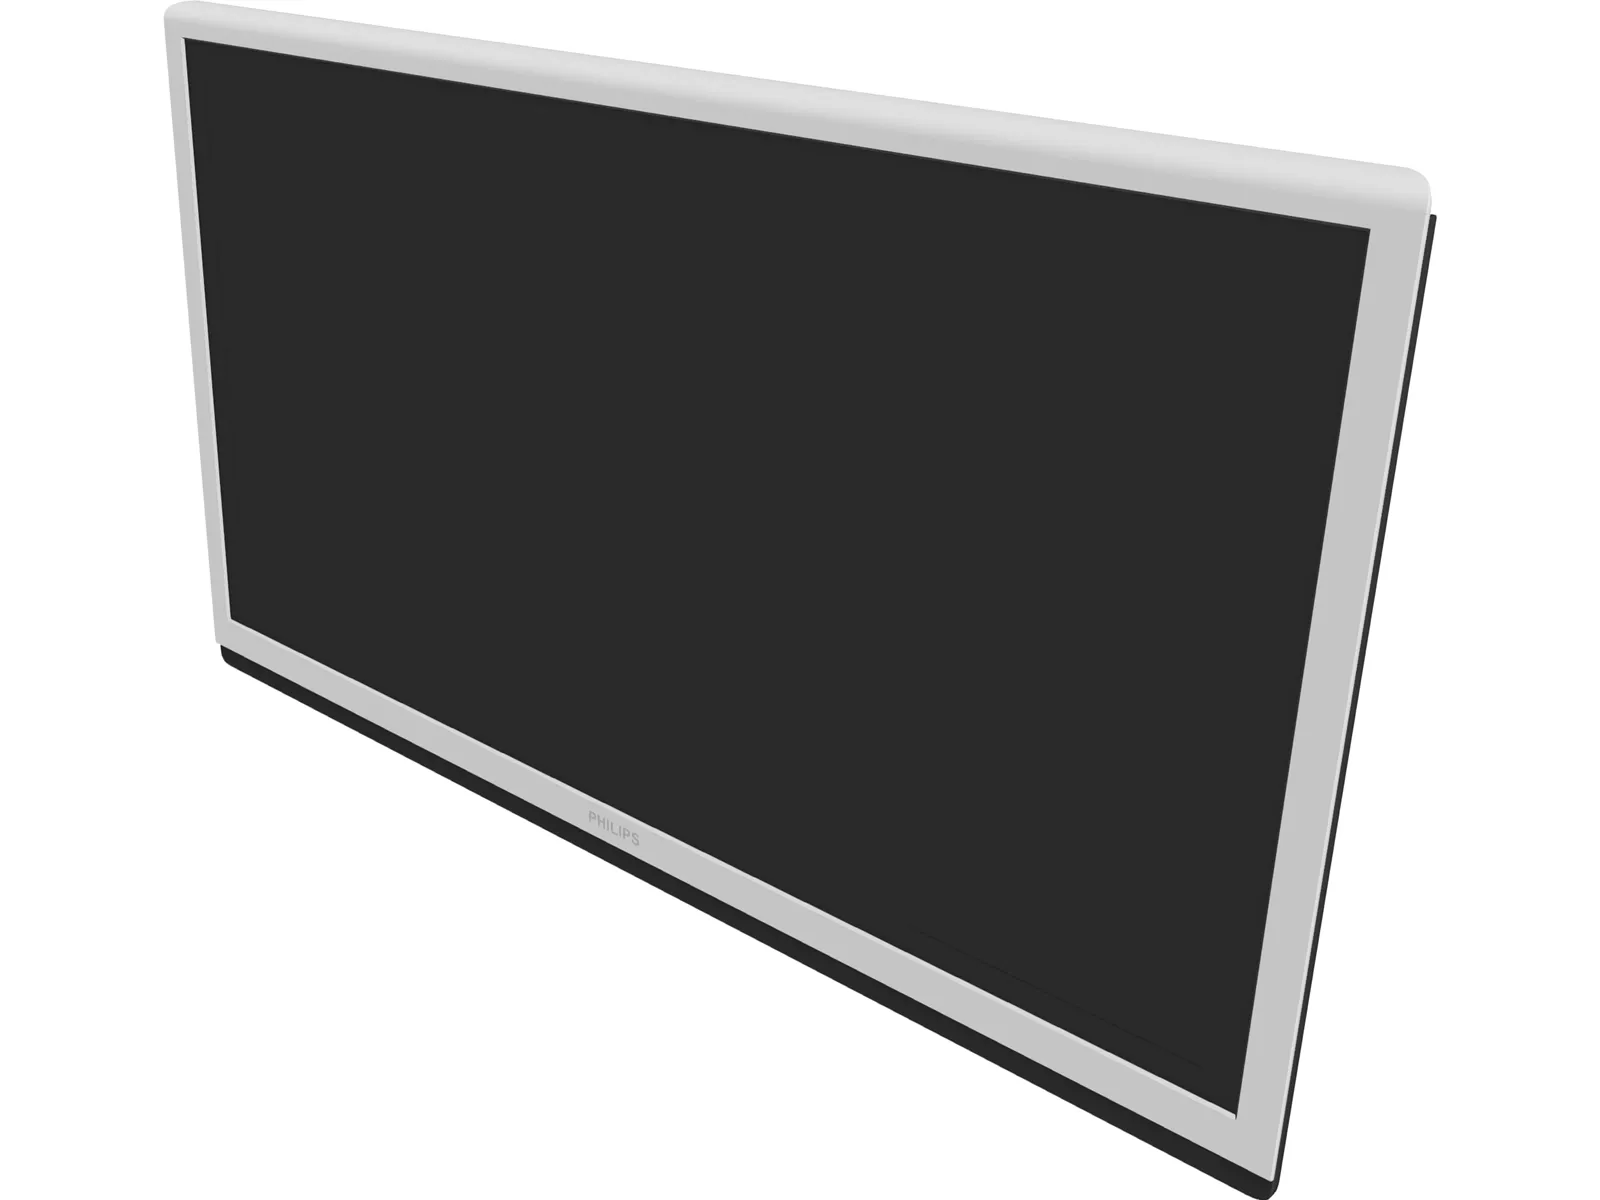 Philips LED TV 42 inch (2013) 3D Model